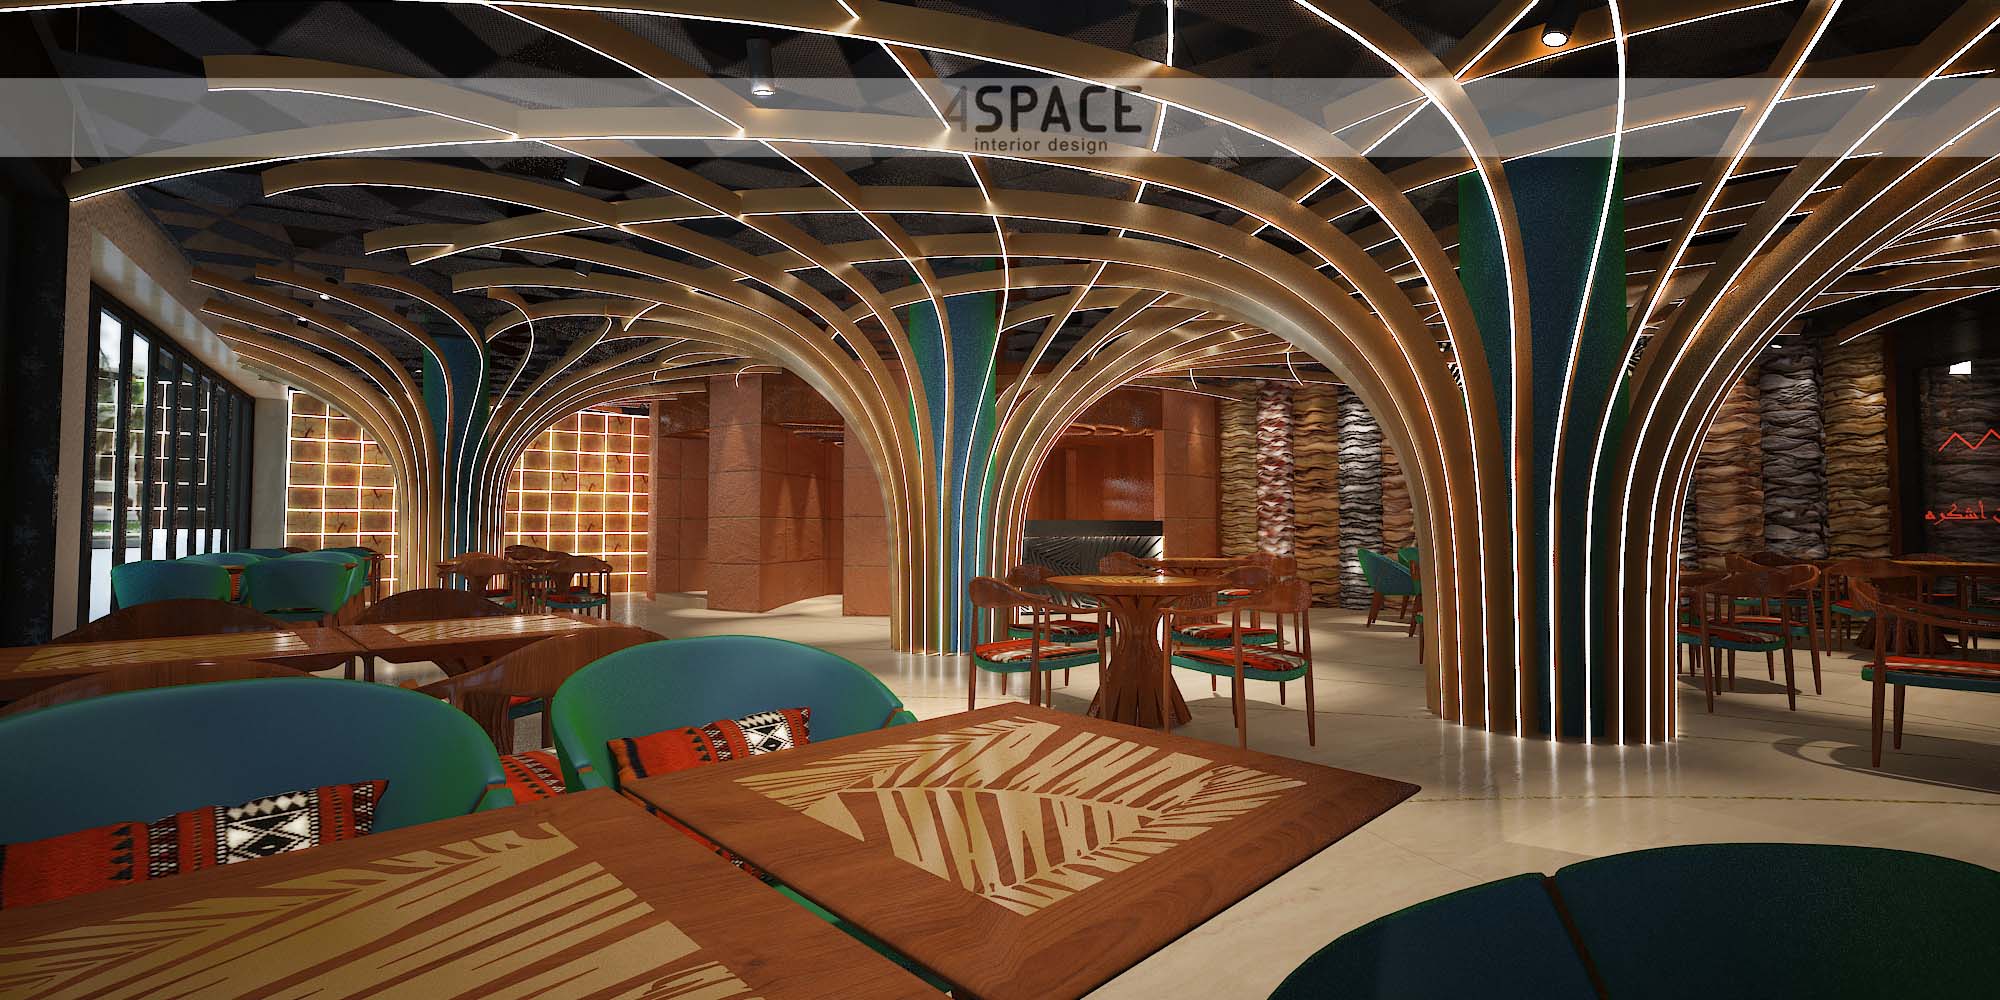 Karamna restaurant Dubai by 4SPACE interior design 03